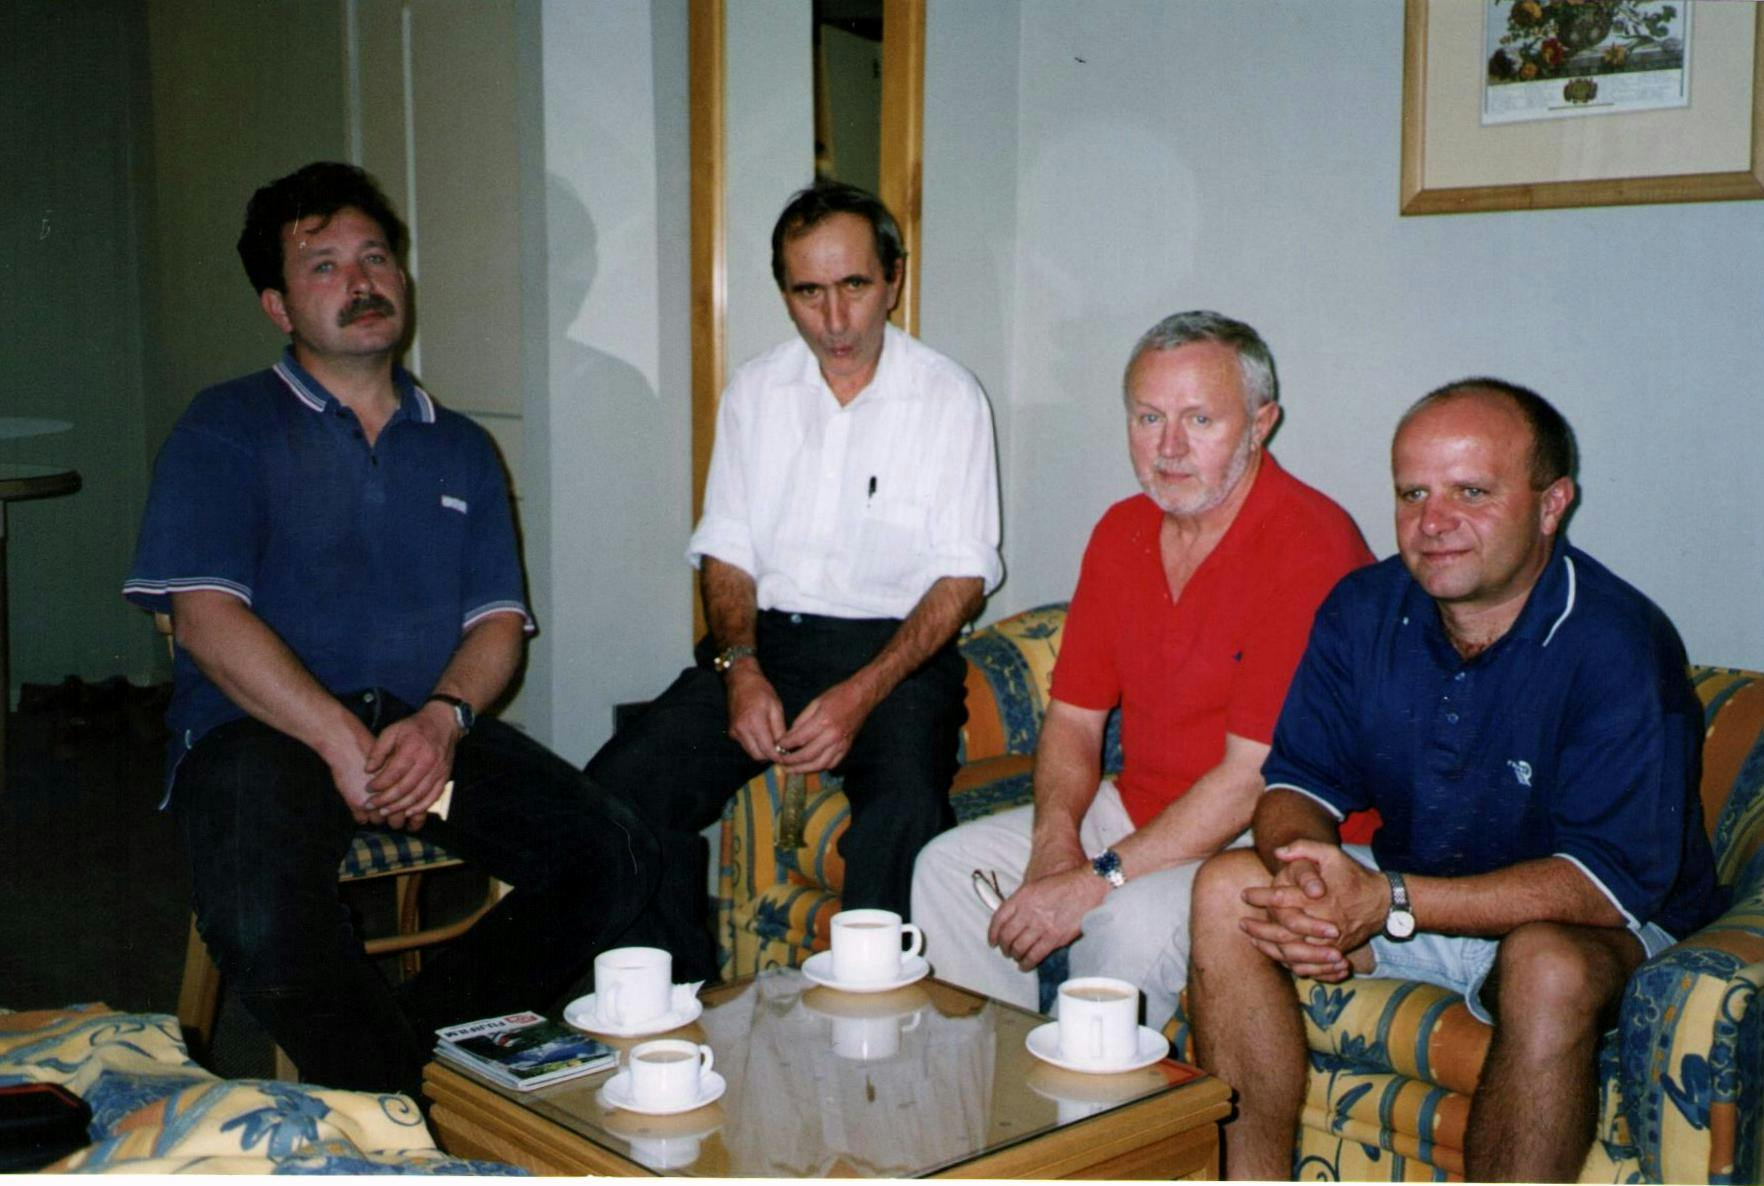 Chile, Lacha Airport, early 21st century. From left to right: Jerzy Wieczorek, Stefan Danecki, Zbigniew Kowalski, NN.